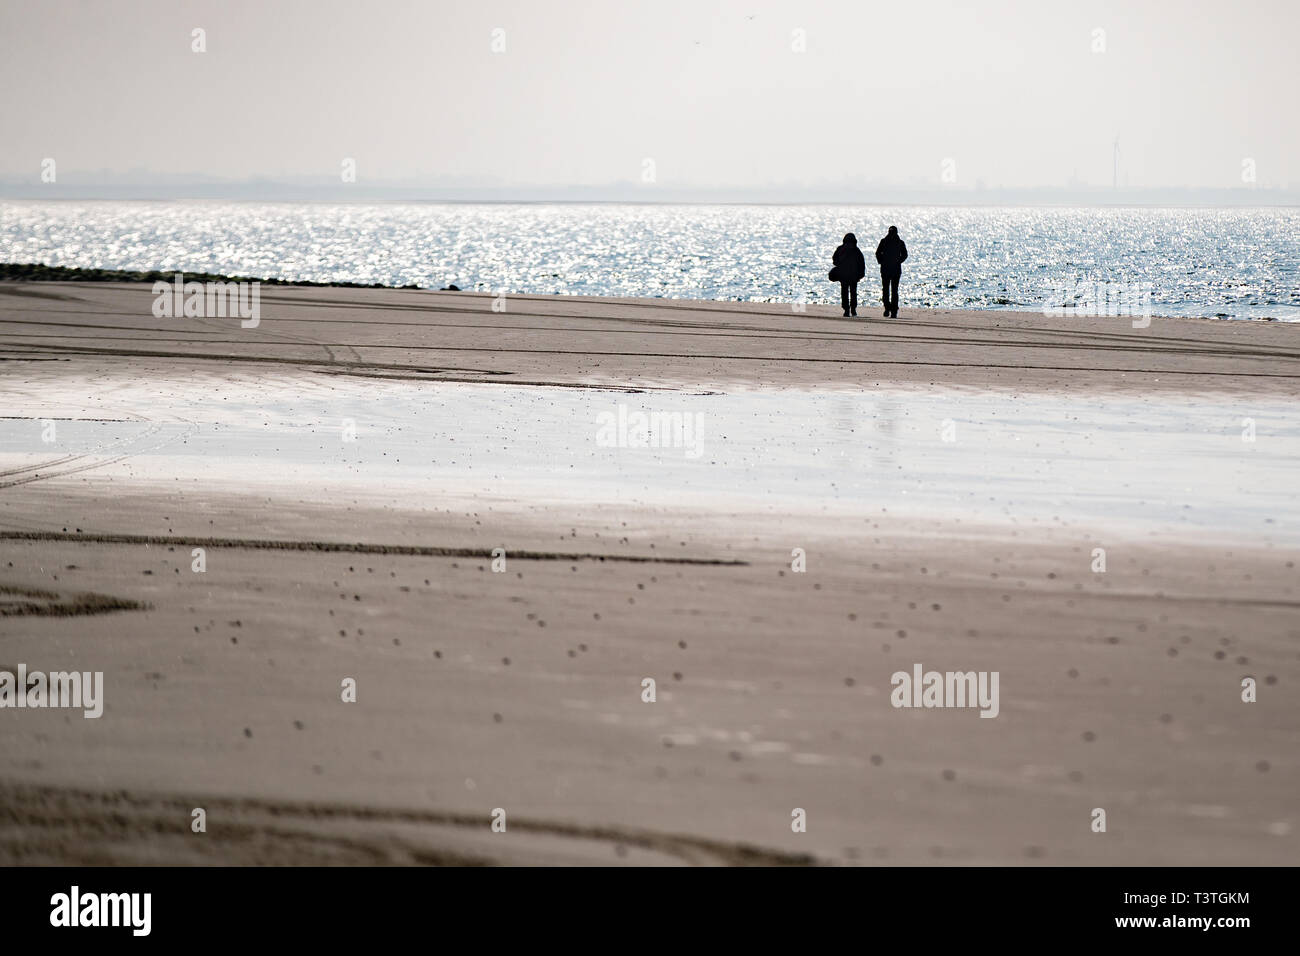 Zwei Personen laufen am Strand von Norderney Foto Stock